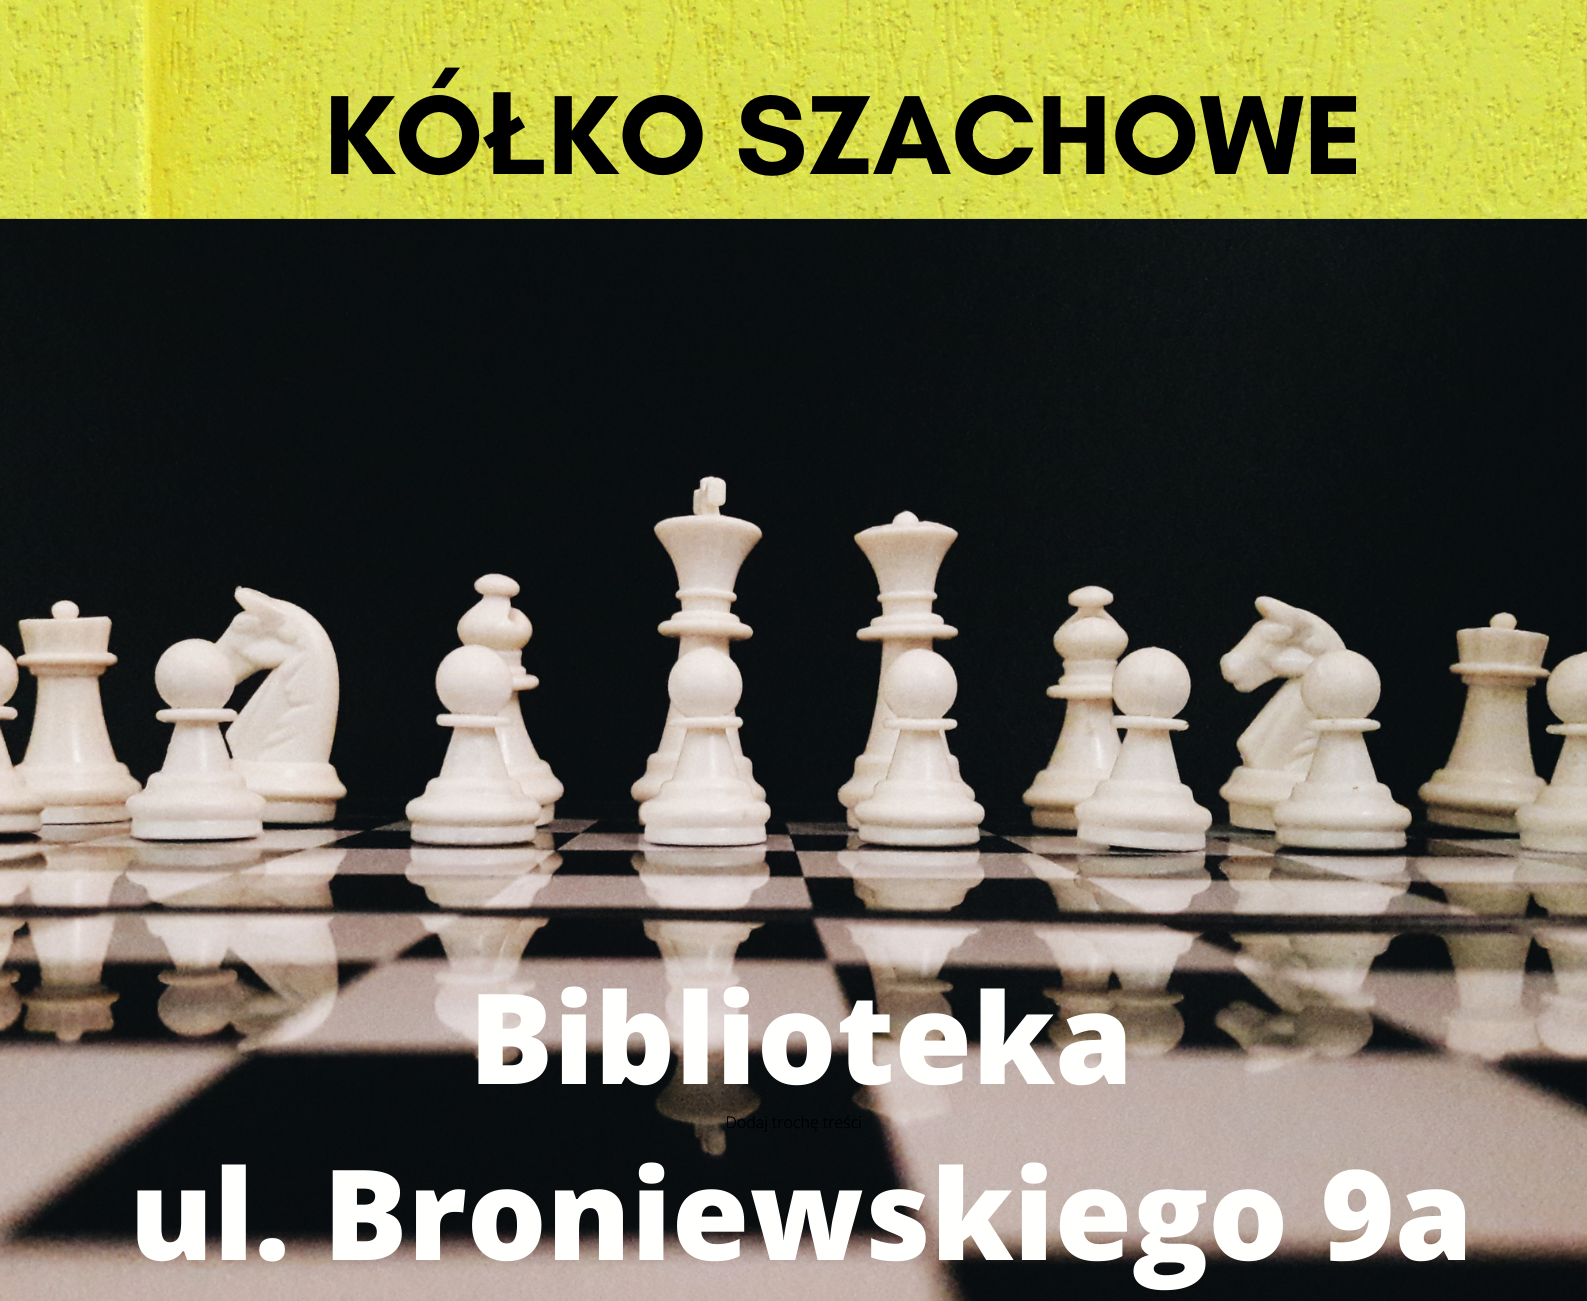 na tle szachownicy napis: Kółko szachowe, Biblioteka ul. Broniewskiego 9a